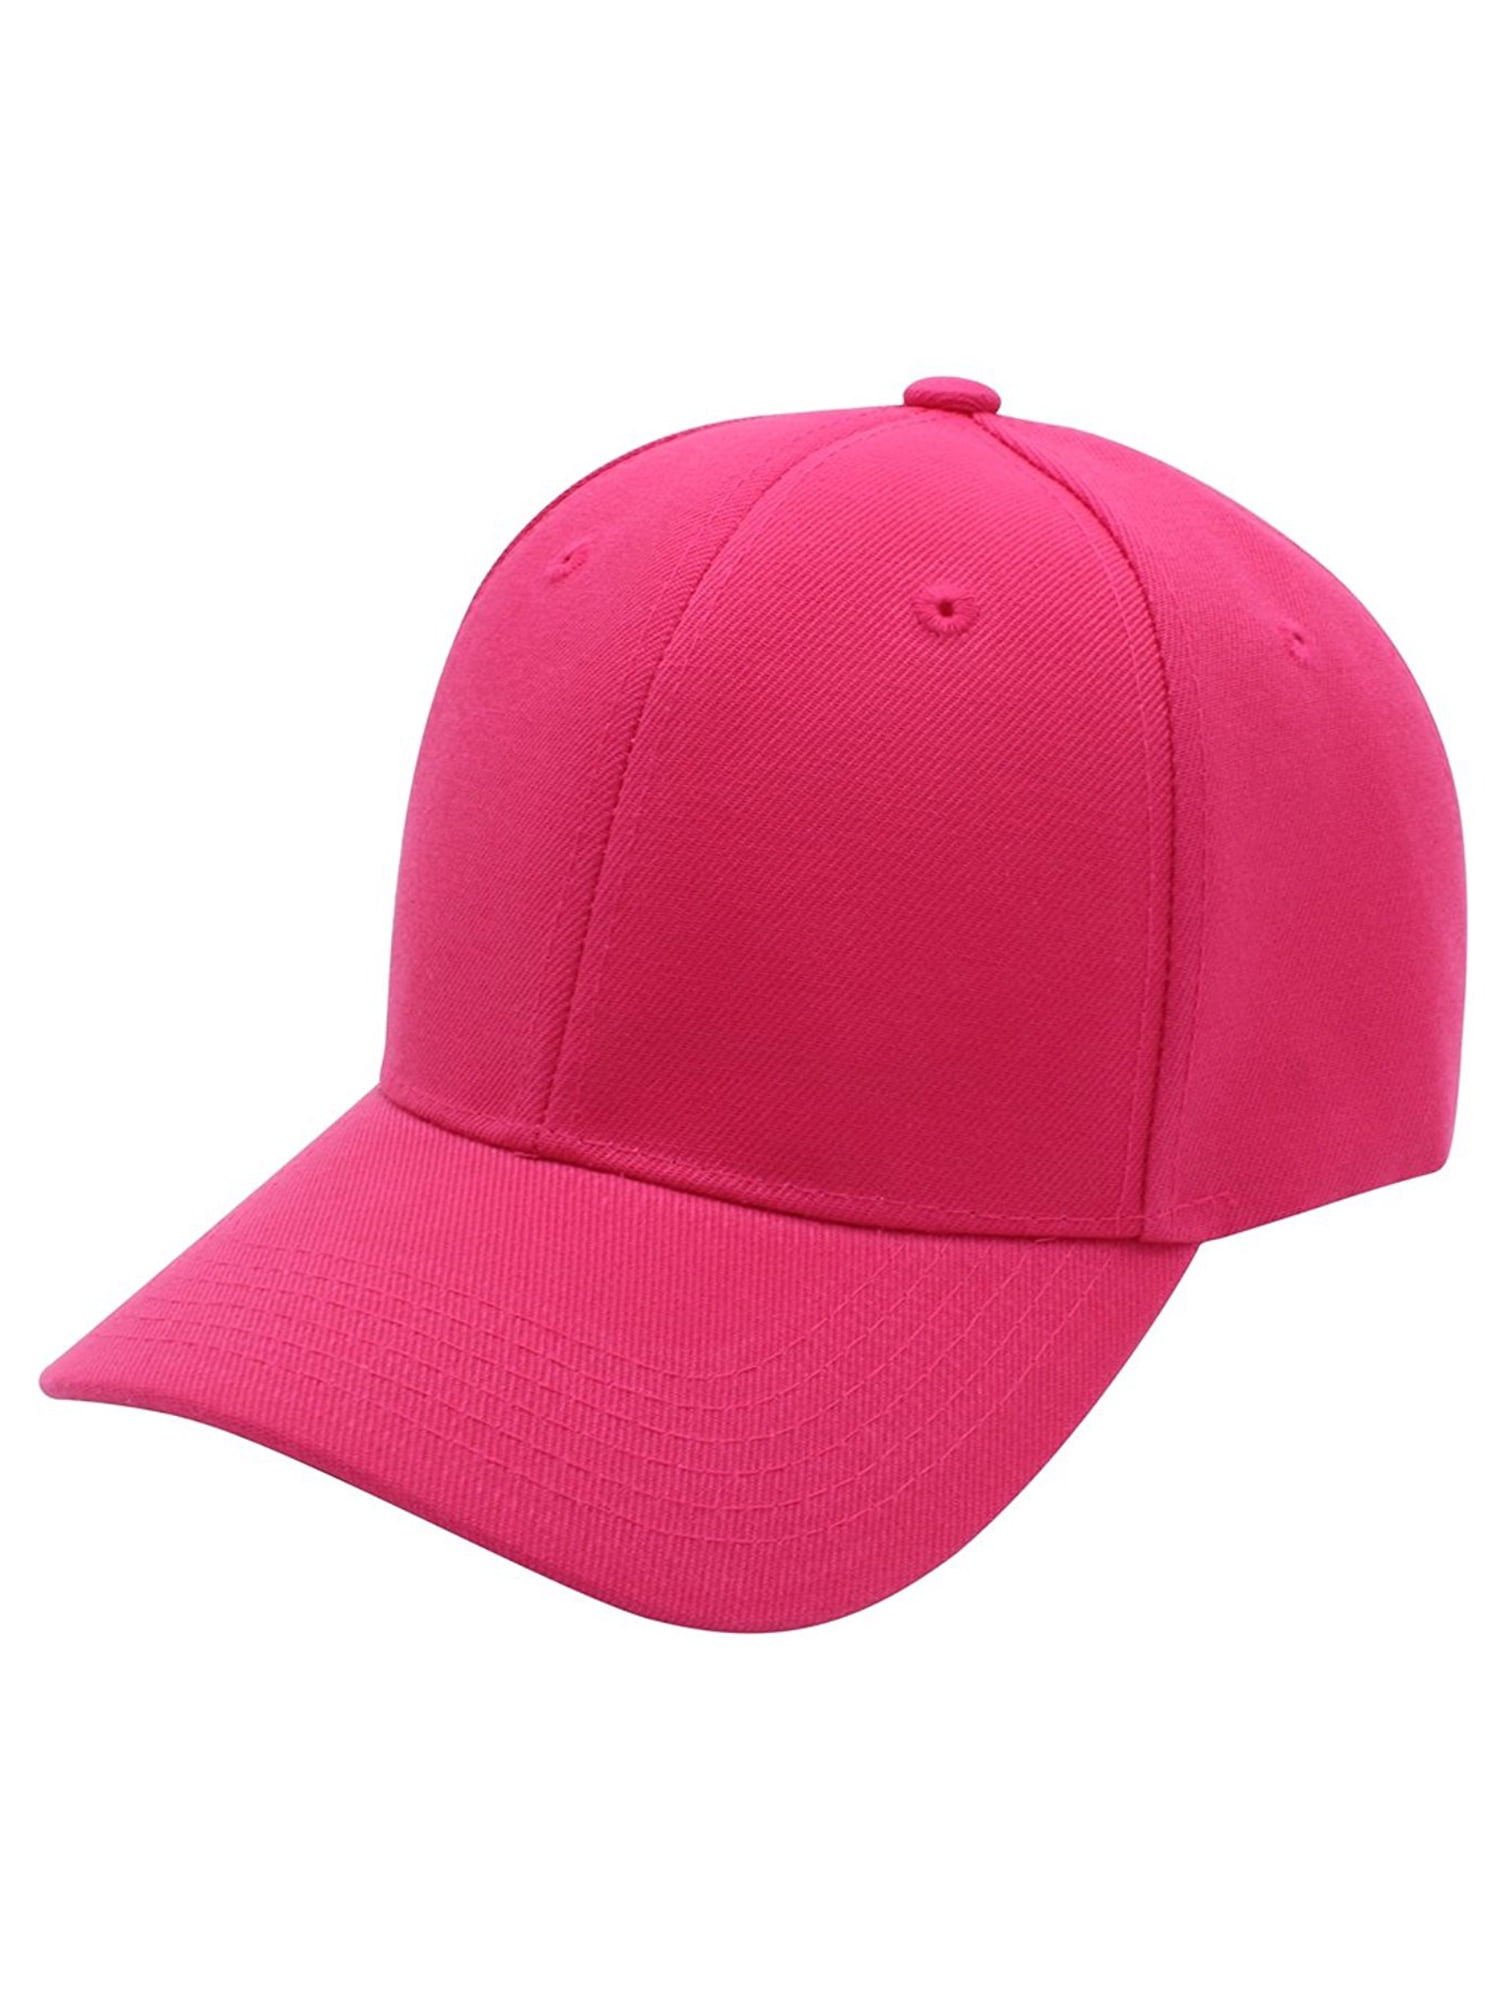 D&I Basic Baseball Cap Adjustable Closure Curved Visor Hat-Hot Pink ...